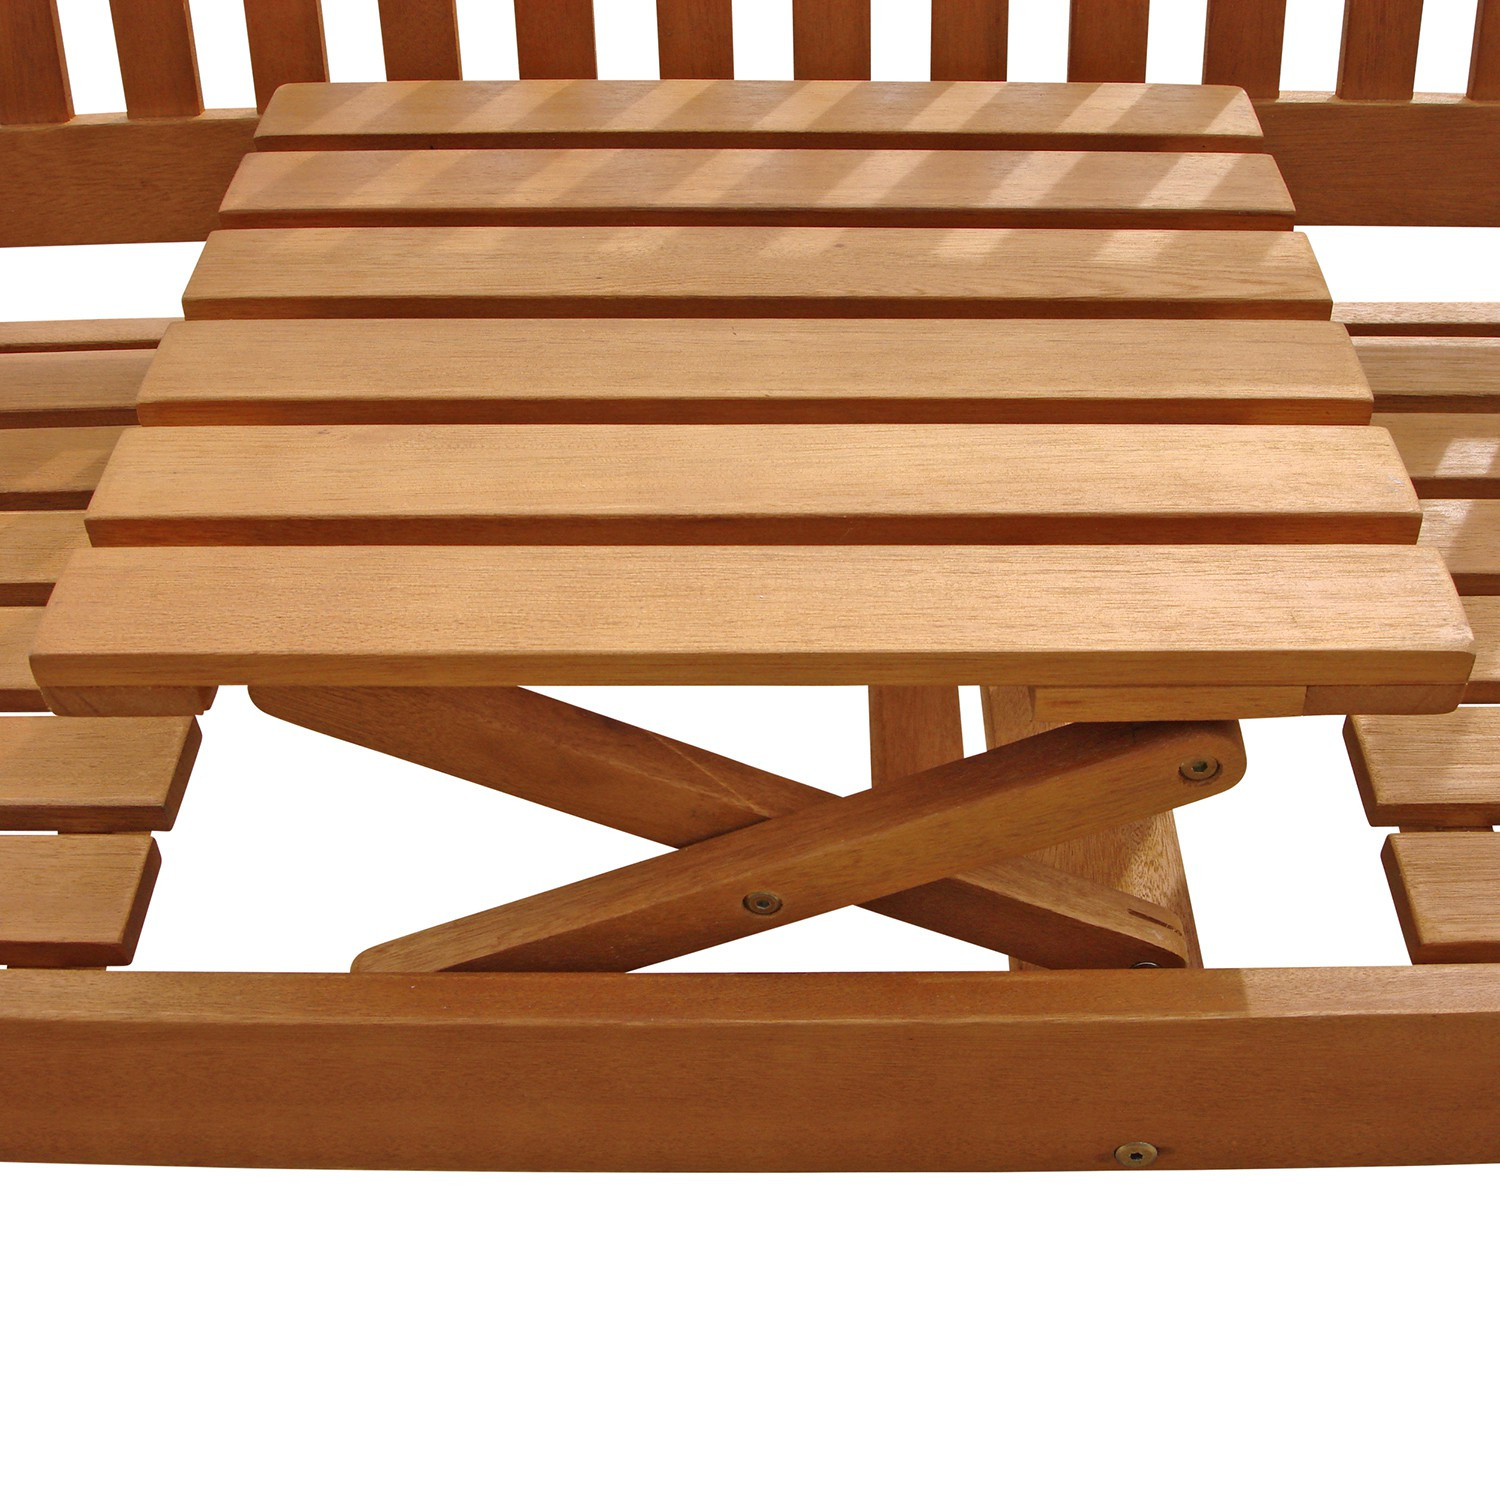 Gartenbank Mit Tisch
 Gartenbank mit integriertem Klapptisch aus Holz ideal für